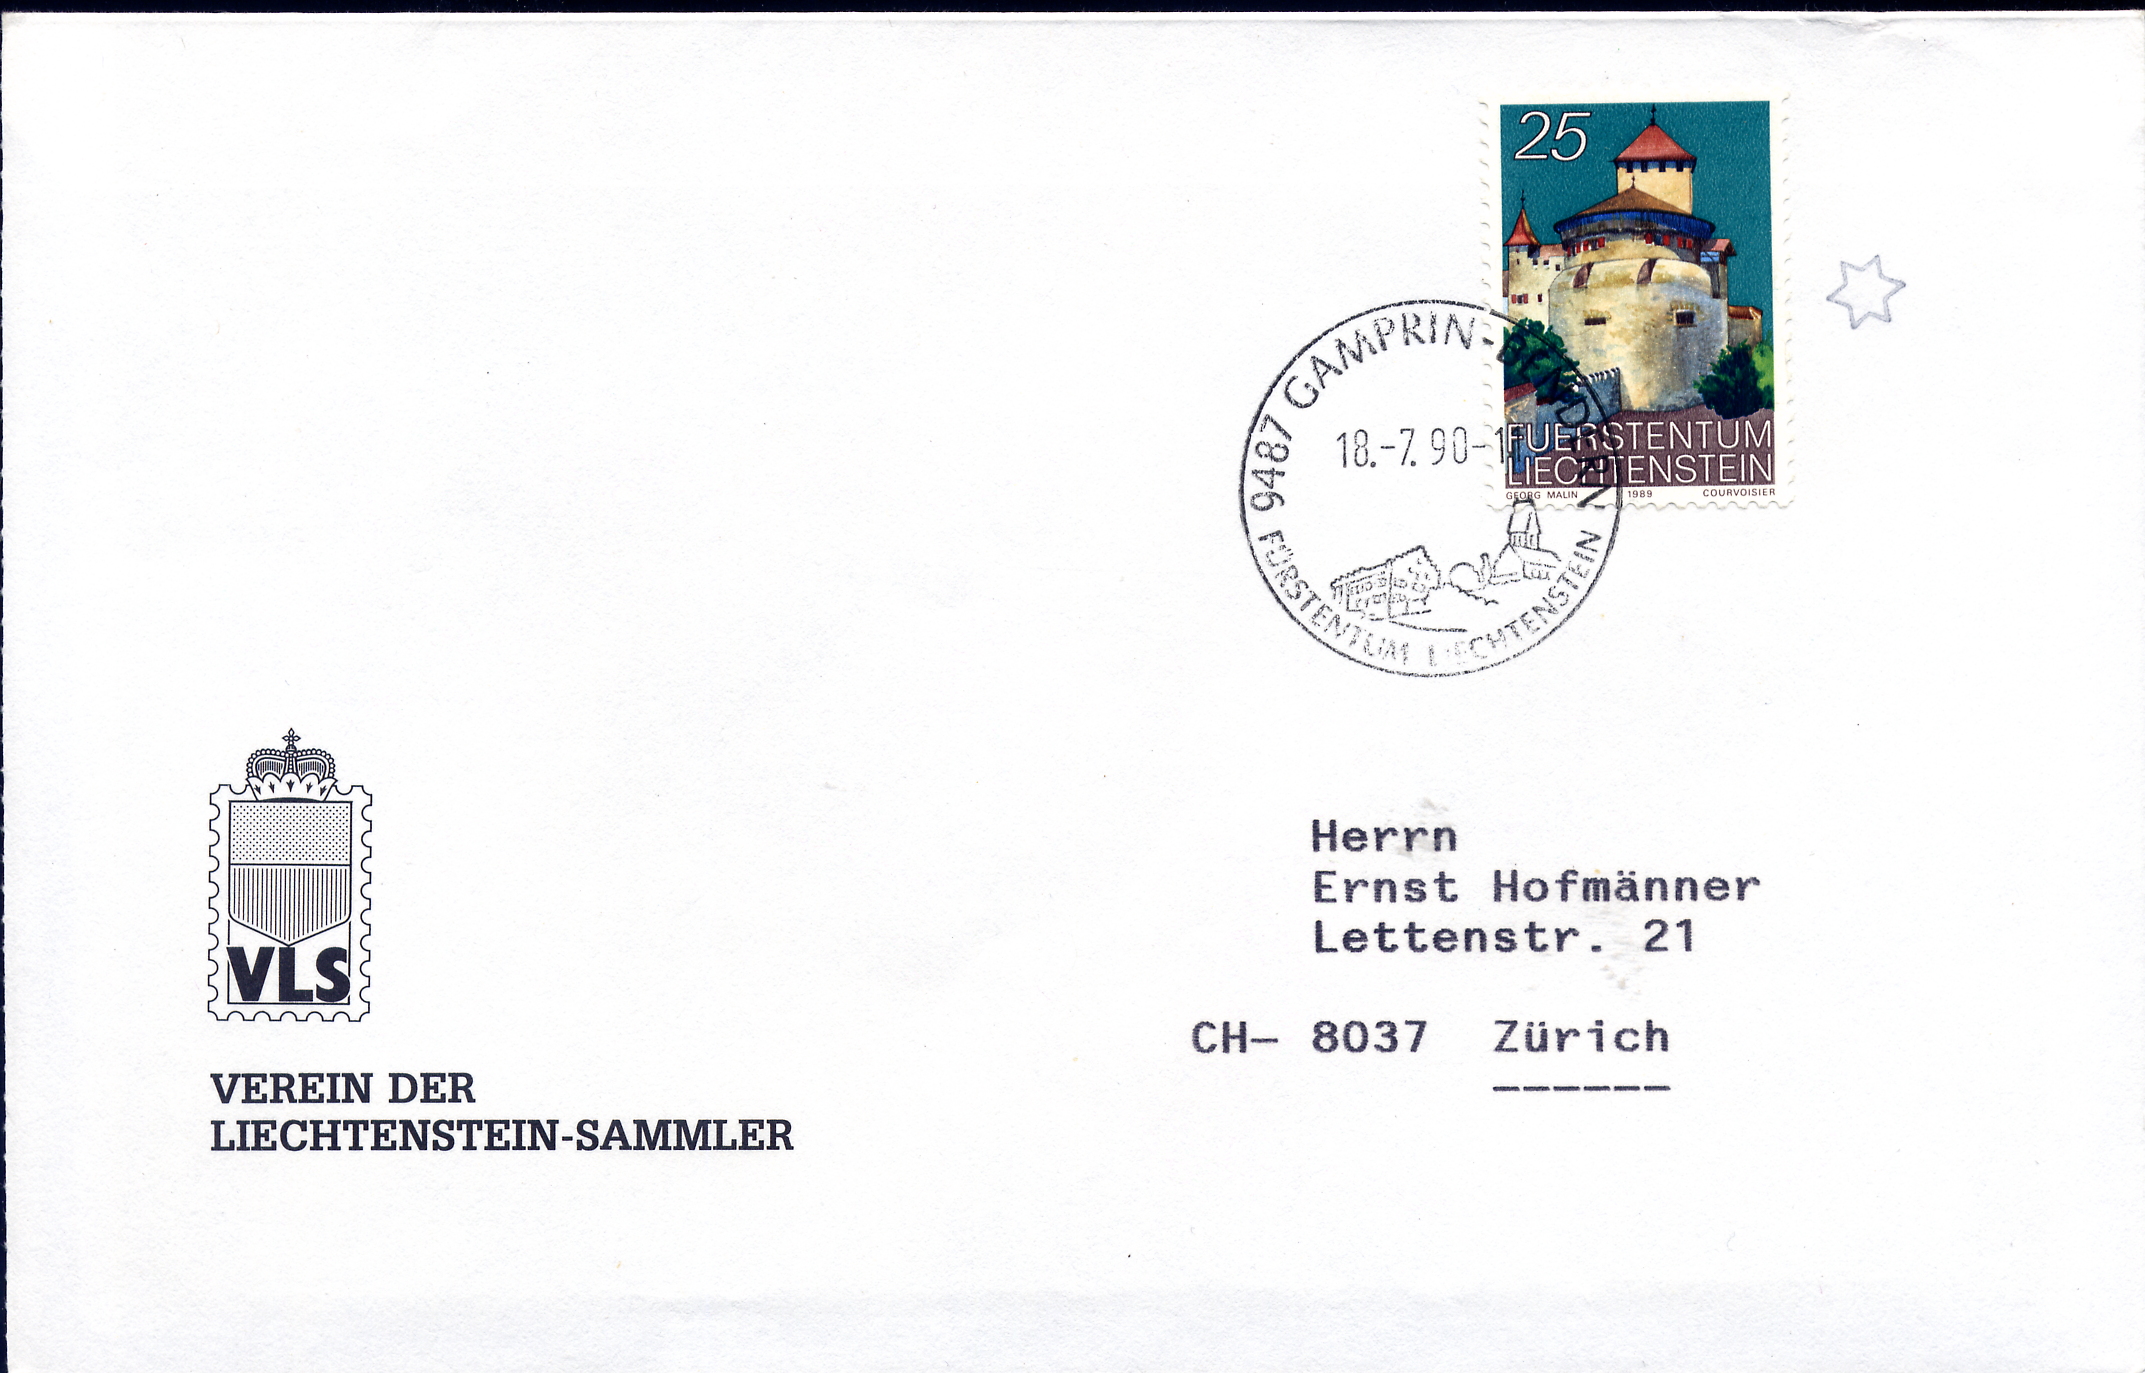 https://swiss-stamps.org/wp-content/uploads/2023/12/1990-7-VLS-Gamprin-Bendern.jpg